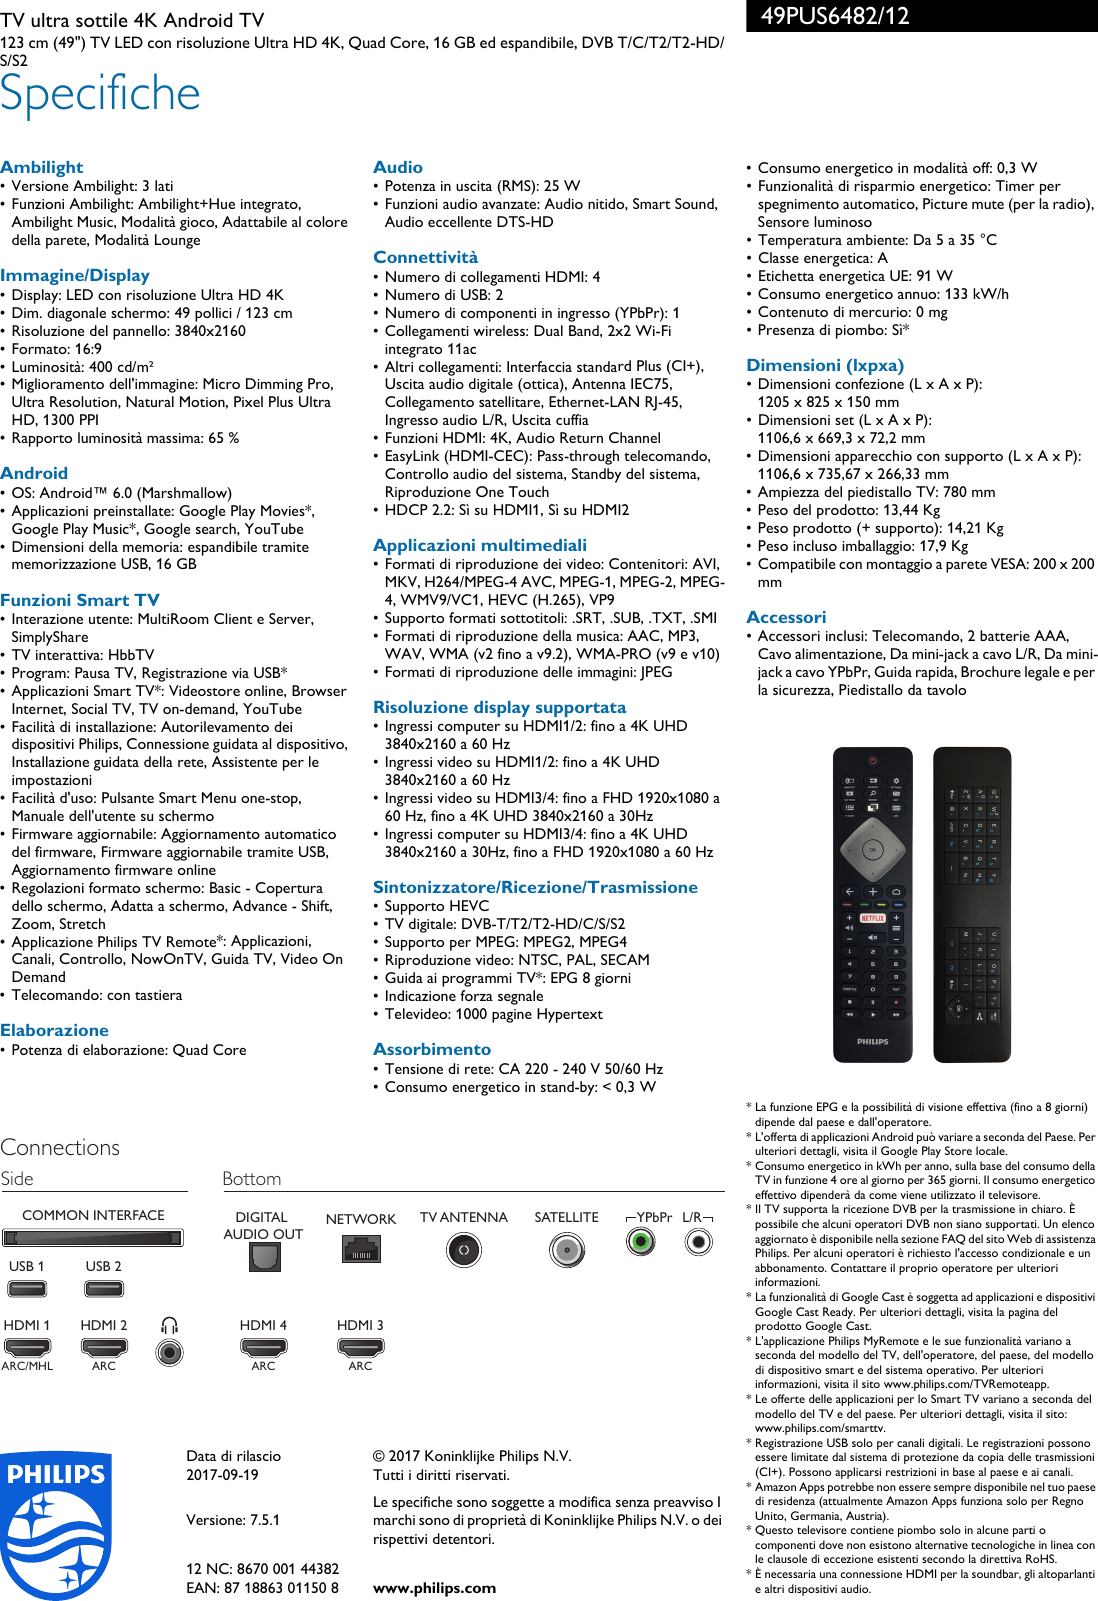 Page 3 of 3 - Philips 49PUS6482/12 Ultra Sottile Android TV 4K Con Tecnologia Ambilight Su 3 Lati E Pixel Plus HD User Manual Scheda Tecnica 49pus6482 12 Pss Itait